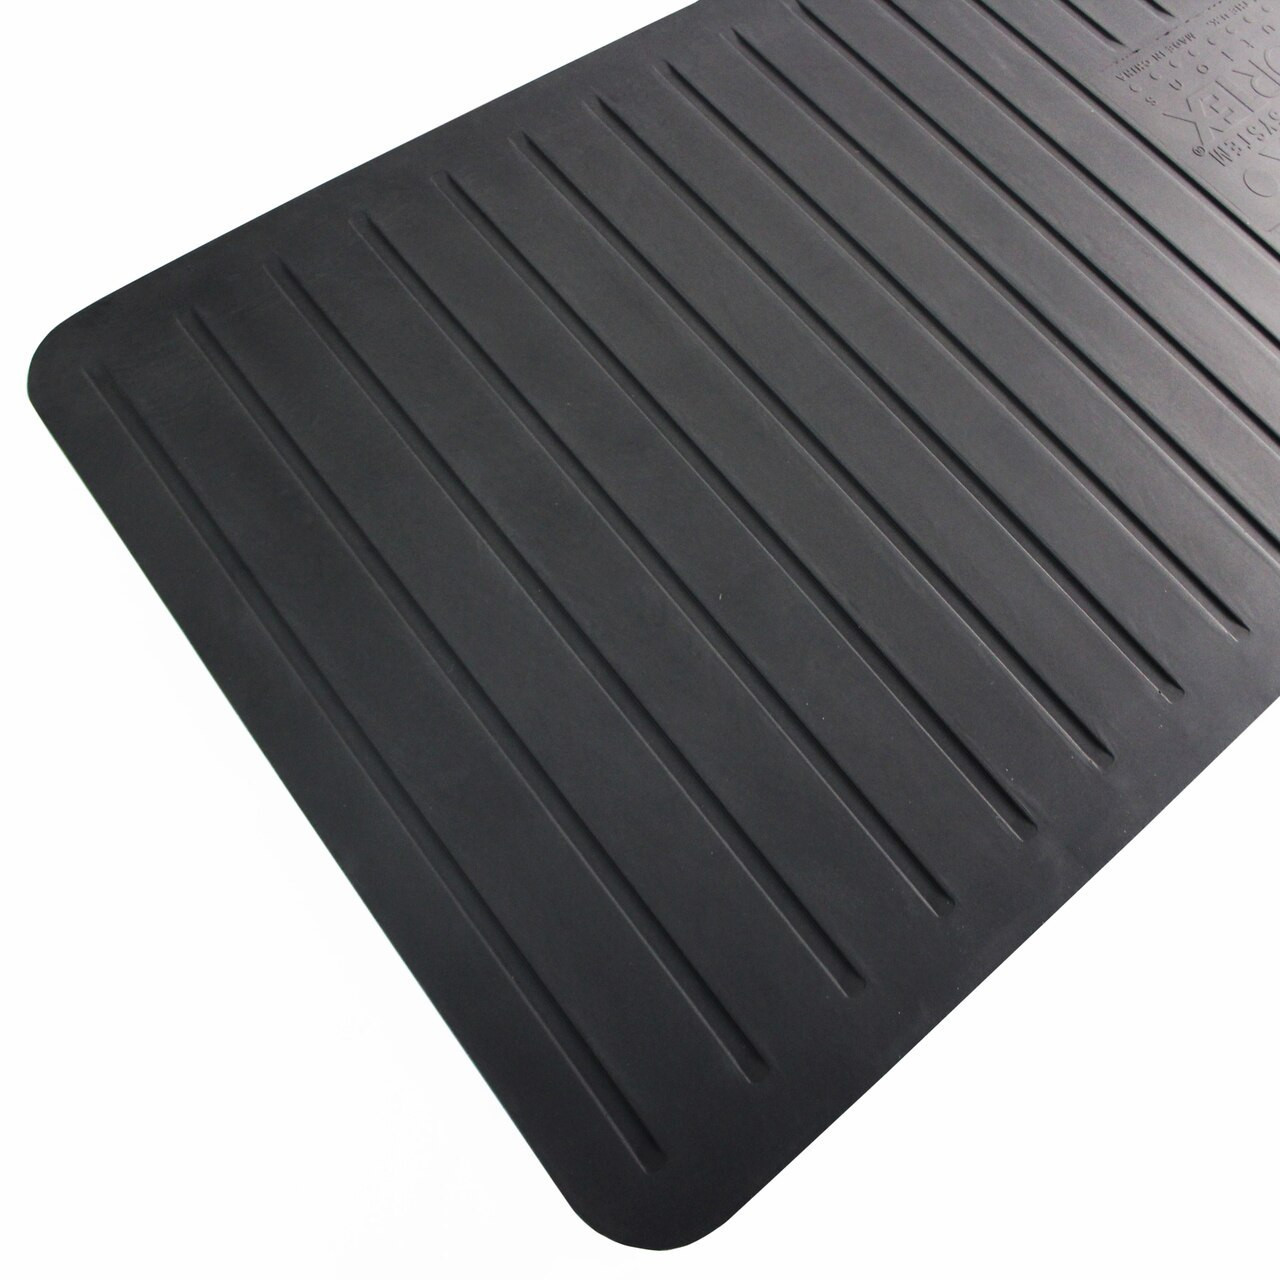 SCS - 9900 Anti-Fatigue Rubber Mat, Black, 0.600 x 3' x 5